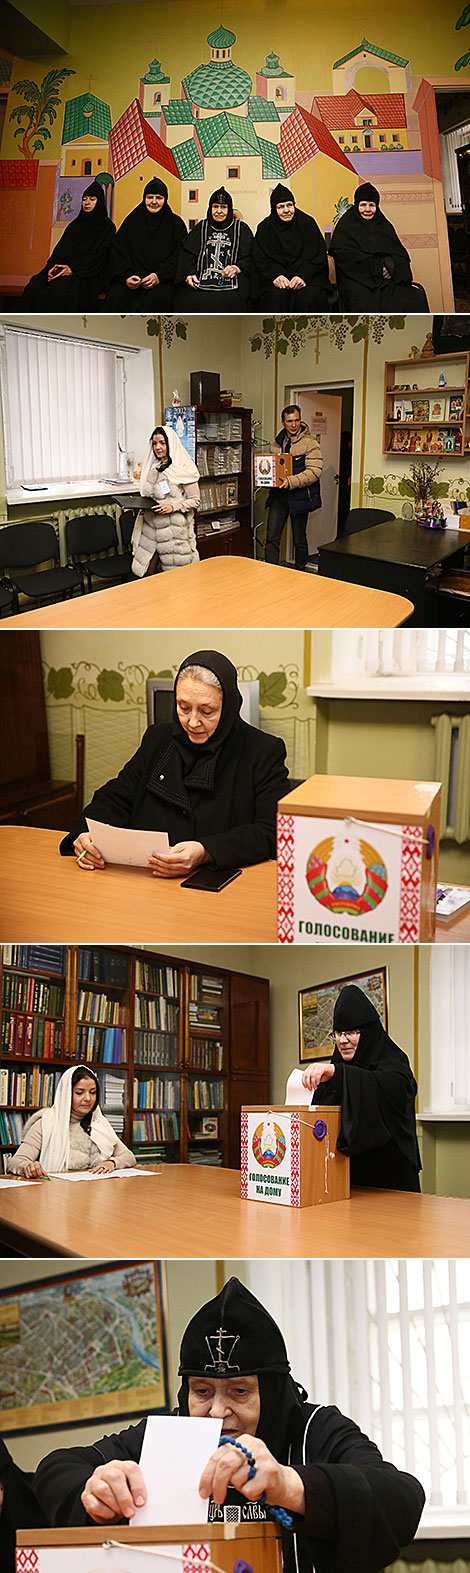 格罗德诺圣母圣诞修道院修女投票了